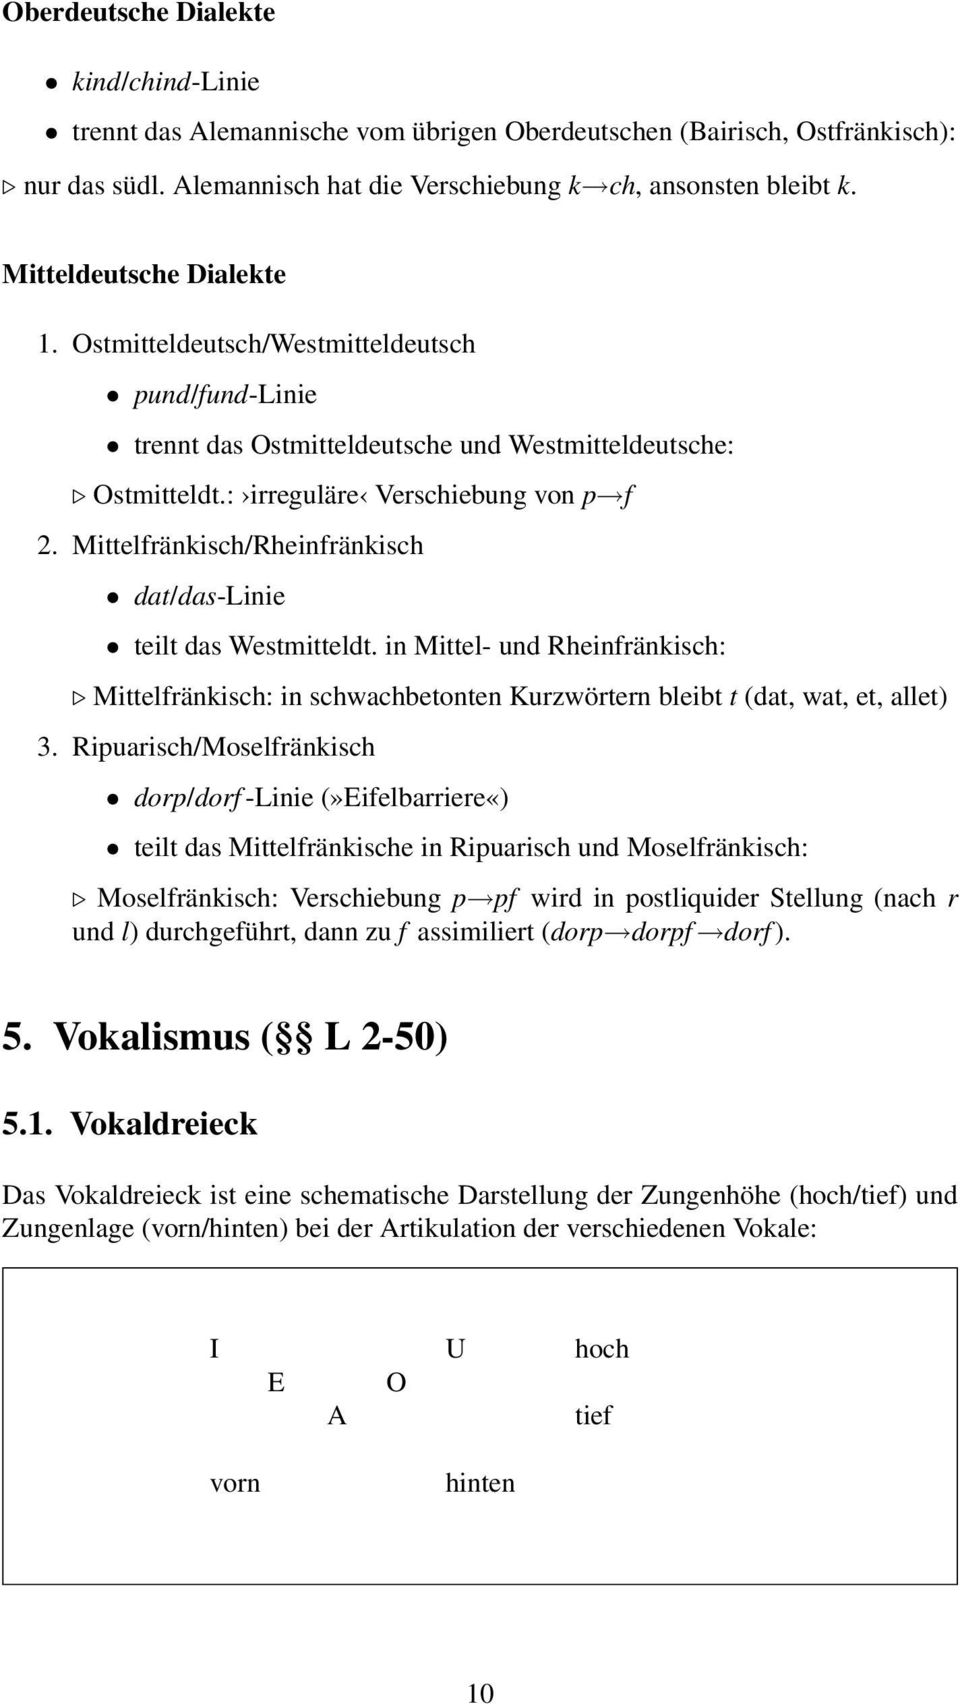 Mittelfränkisch/Rheinfränkisch dat/das-linie teilt das Westmitteldt. in Mittel- und Rheinfränkisch: Mittelfränkisch: in schwachbetonten Kurzwörtern bleibt t (dat, wat, et, allet) 3.